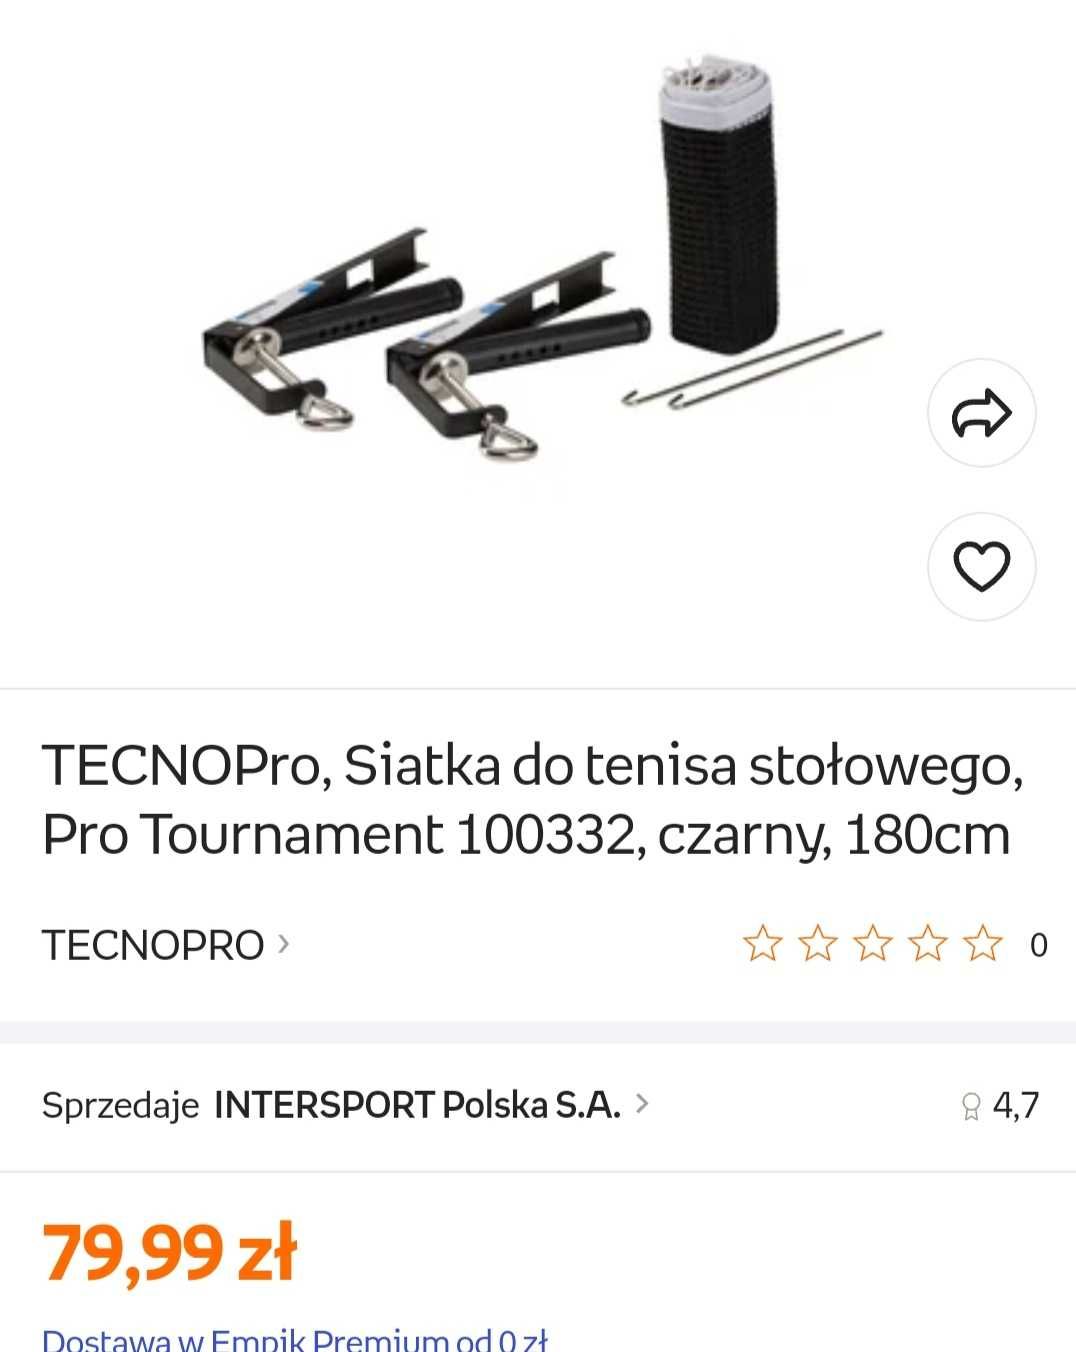 TECNOPro, Siatka do tenisa stołowego, Pro Tournament .180cm czarna